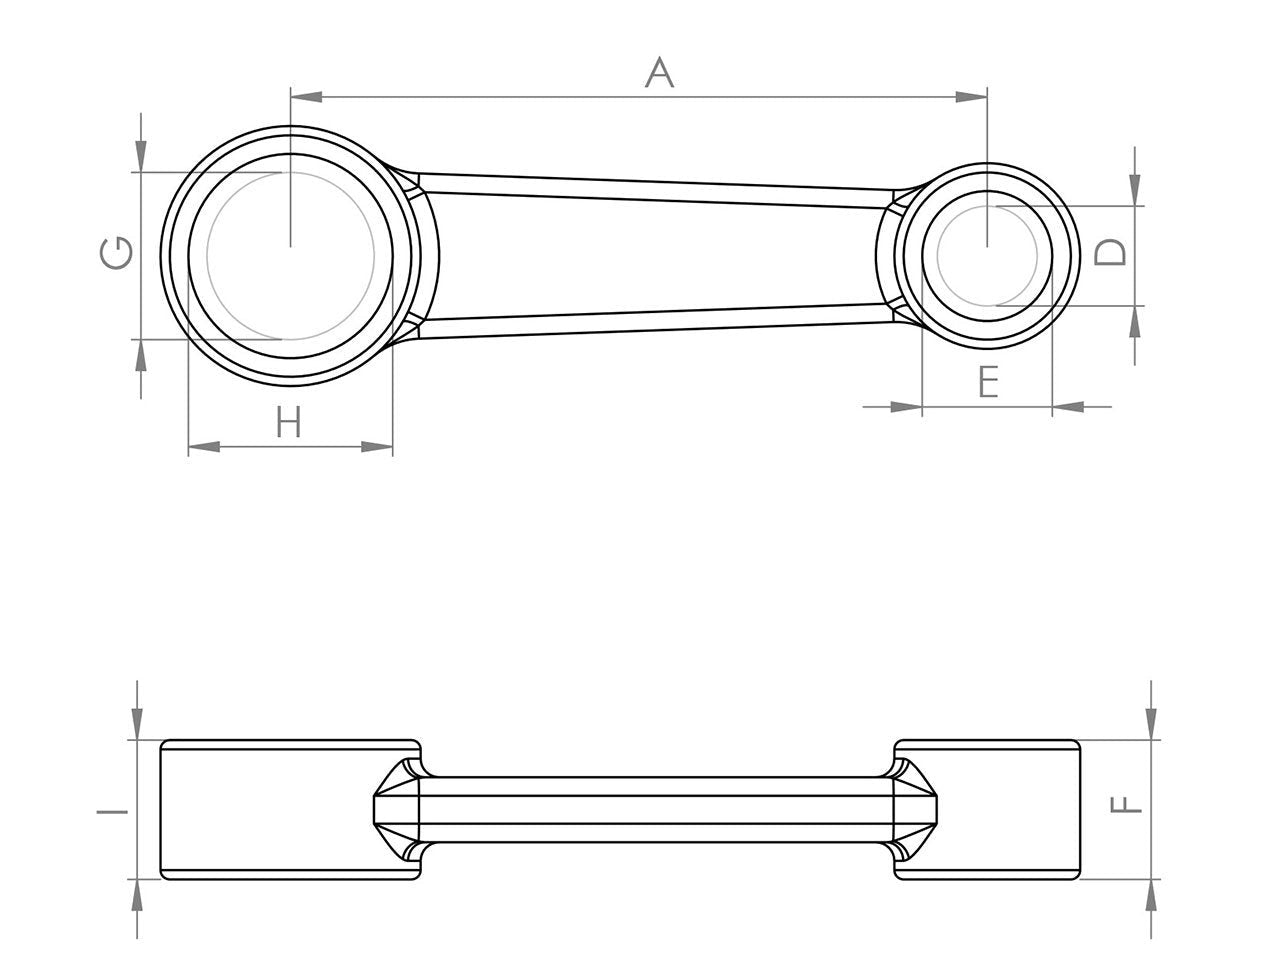 Zeichnung Barikit Pleuel für einen Kawasaki KX 80 Moped Motor mit Bemaßung.